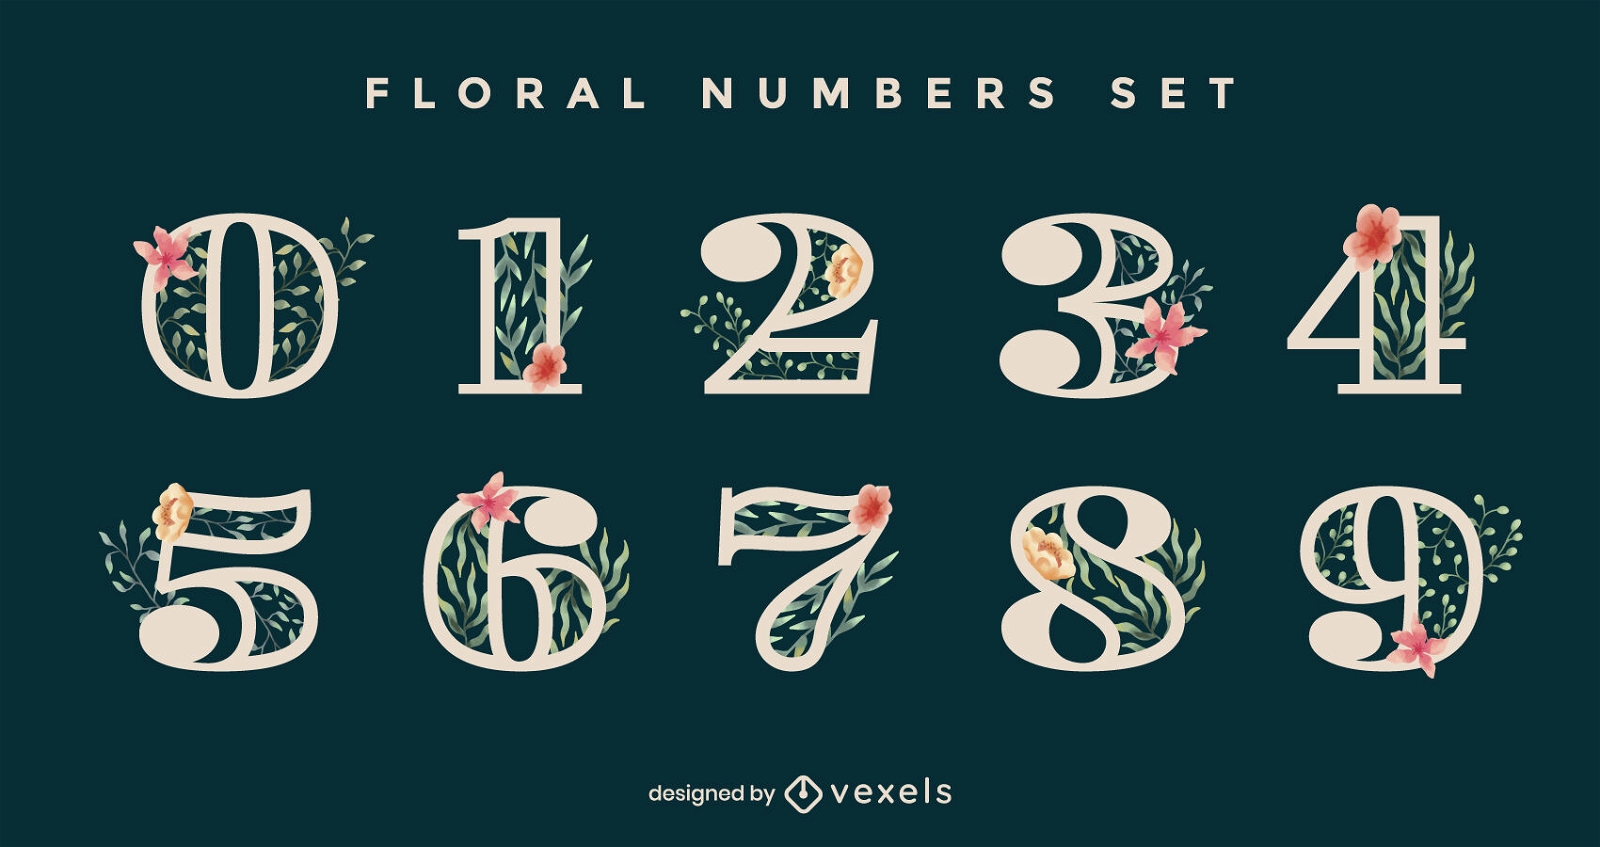 Floral numbers set